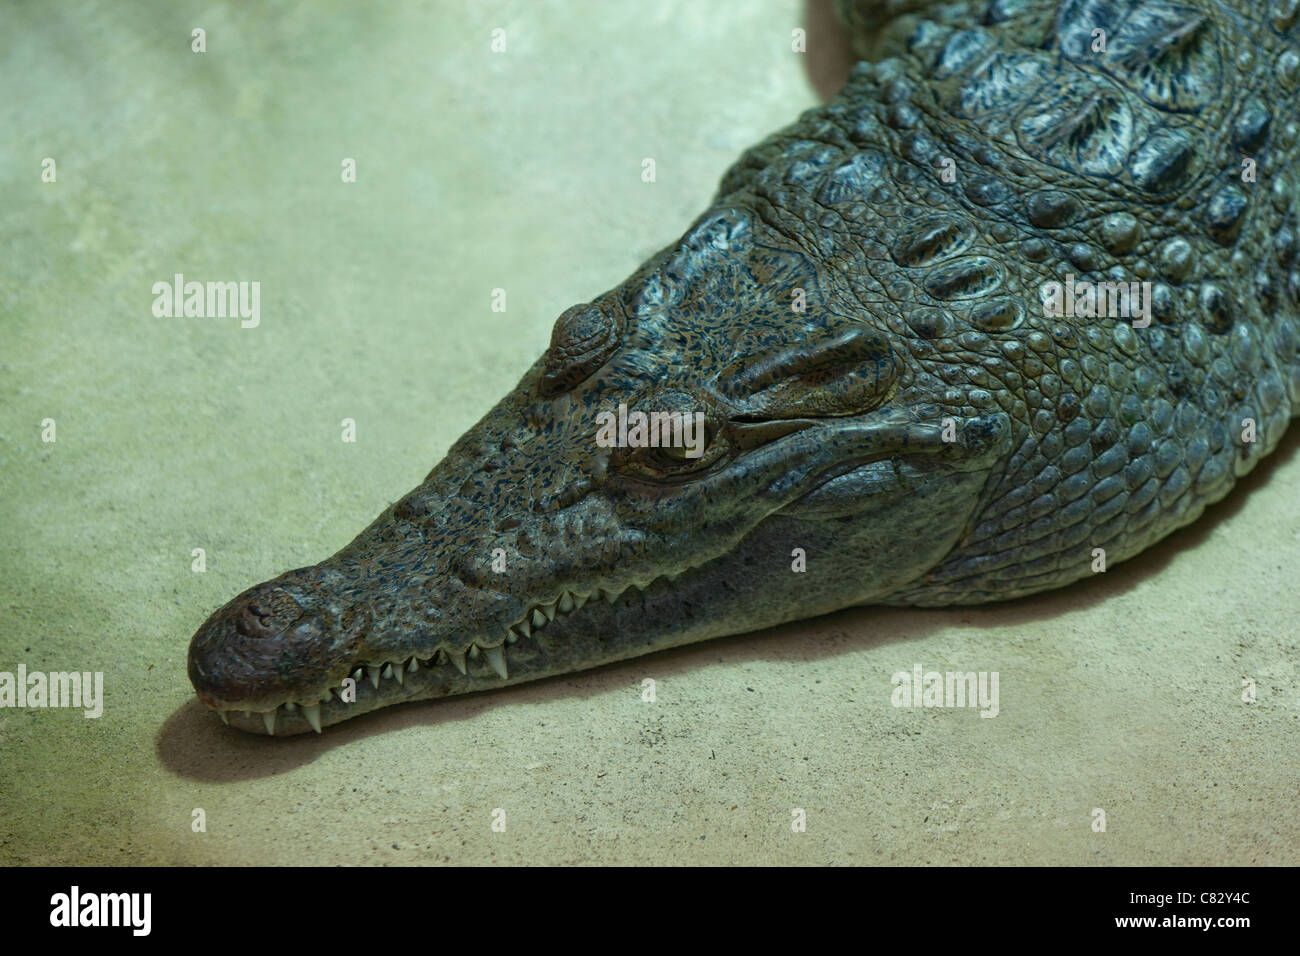 Philippine Crocodile (Crocodylus mindorensis). Specie in via di estinzione. Foto Stock